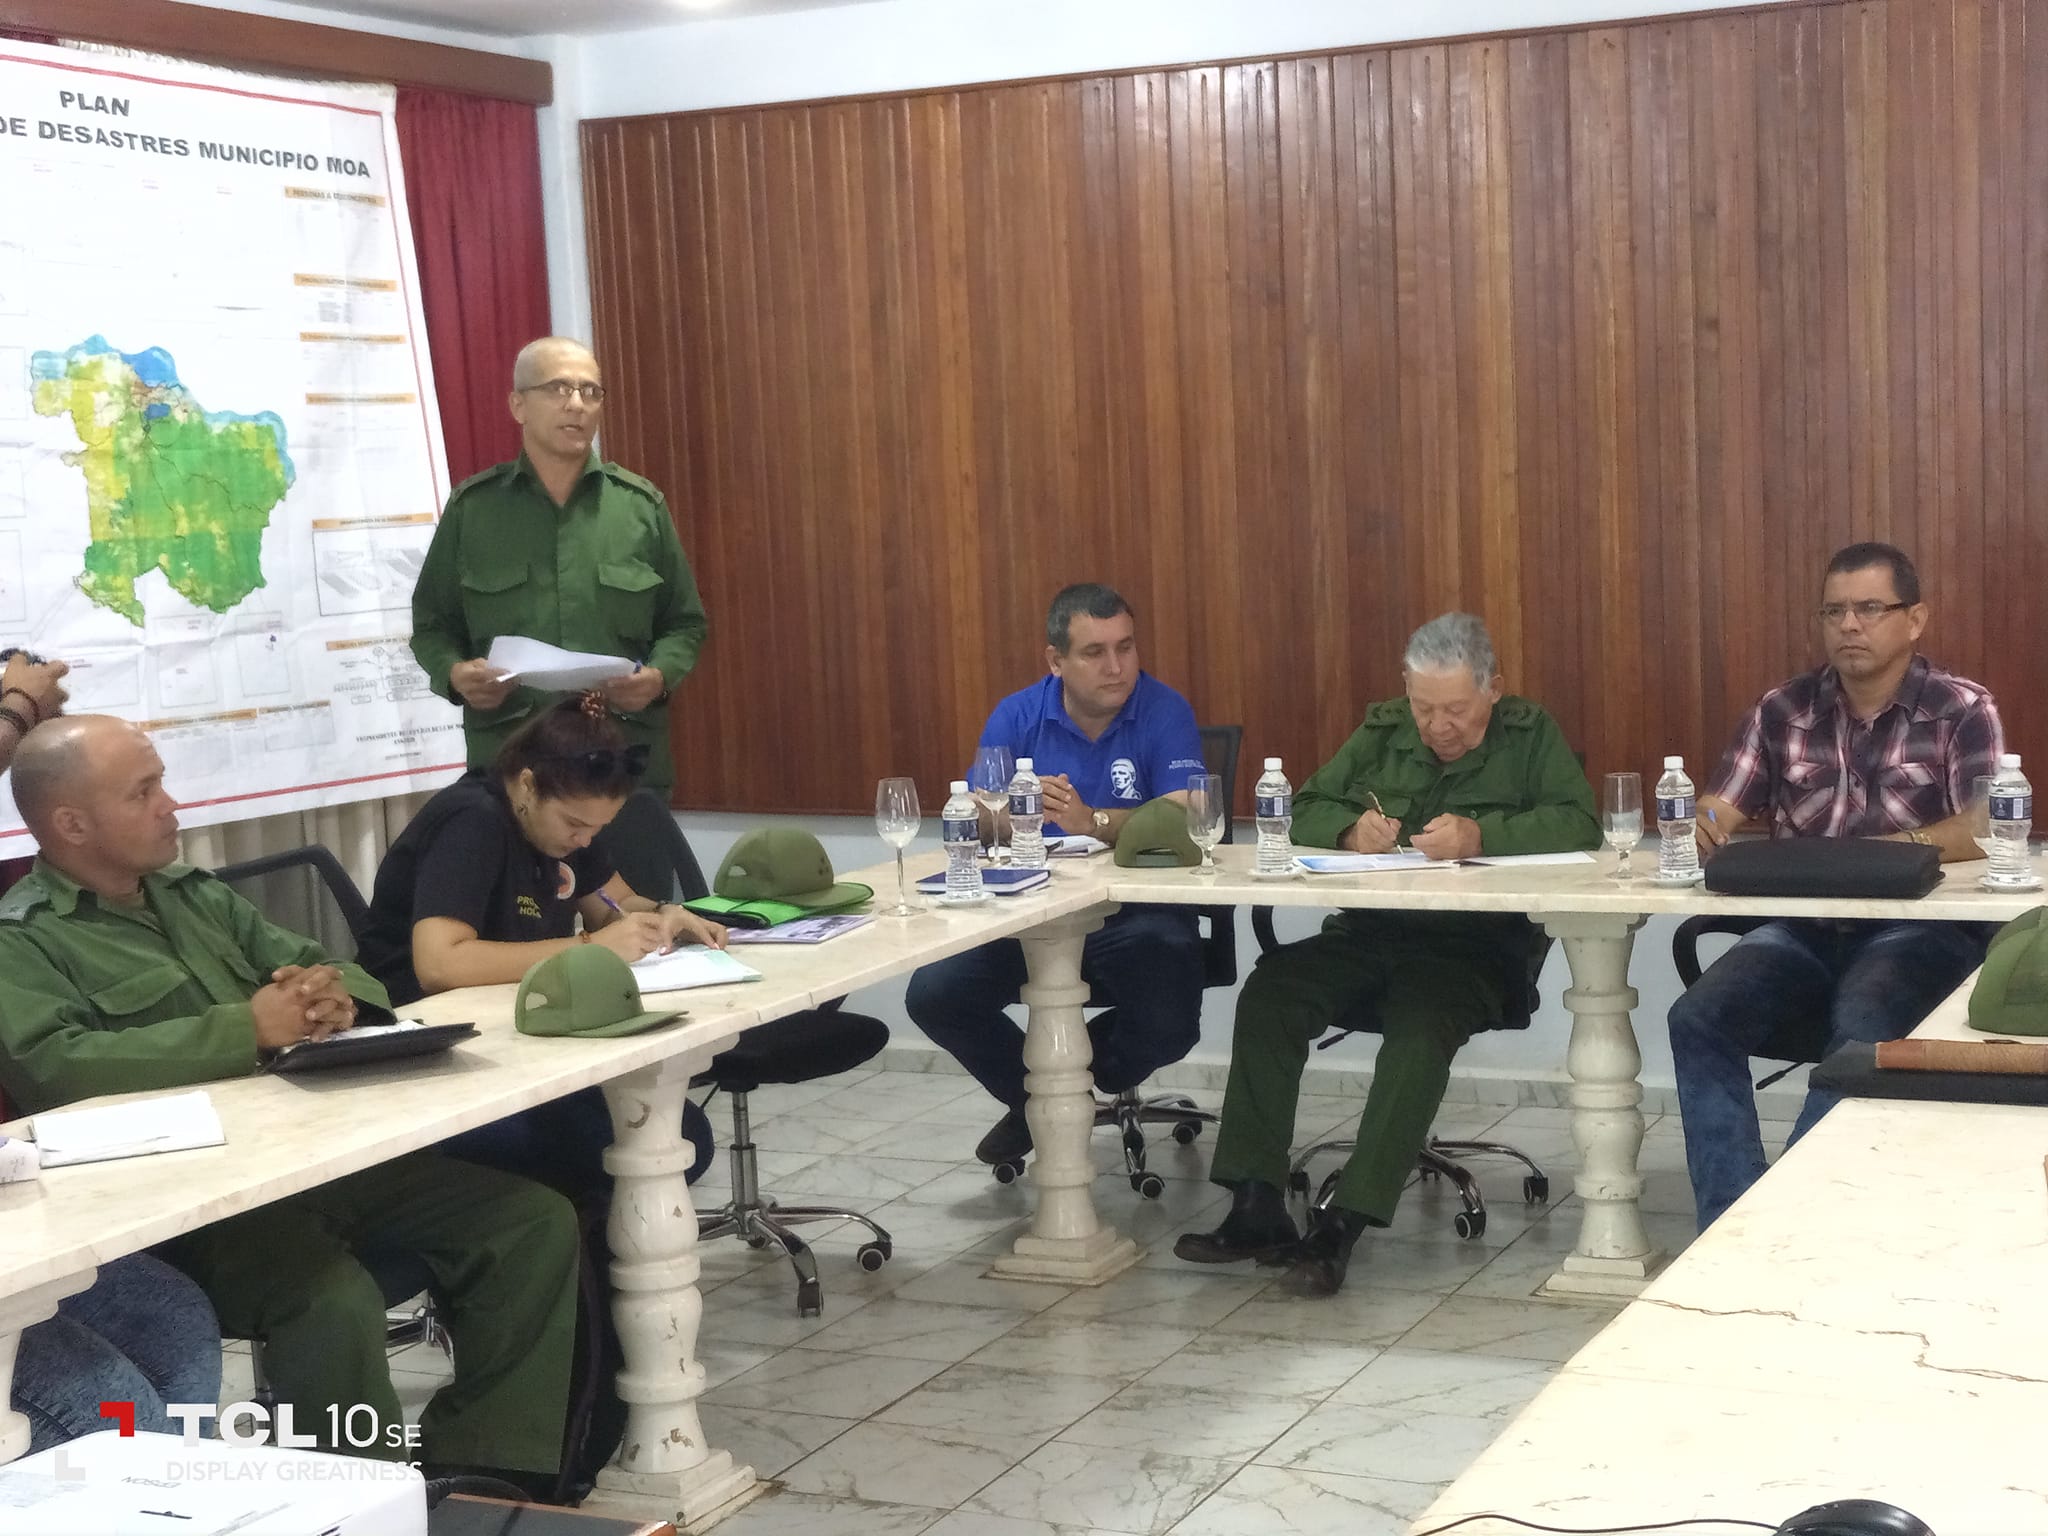 Visita al municipio Moa el General de División y Jefe del Estado Mayor Nacional de la Defensa Civil,  Ramón Pardo Guerra